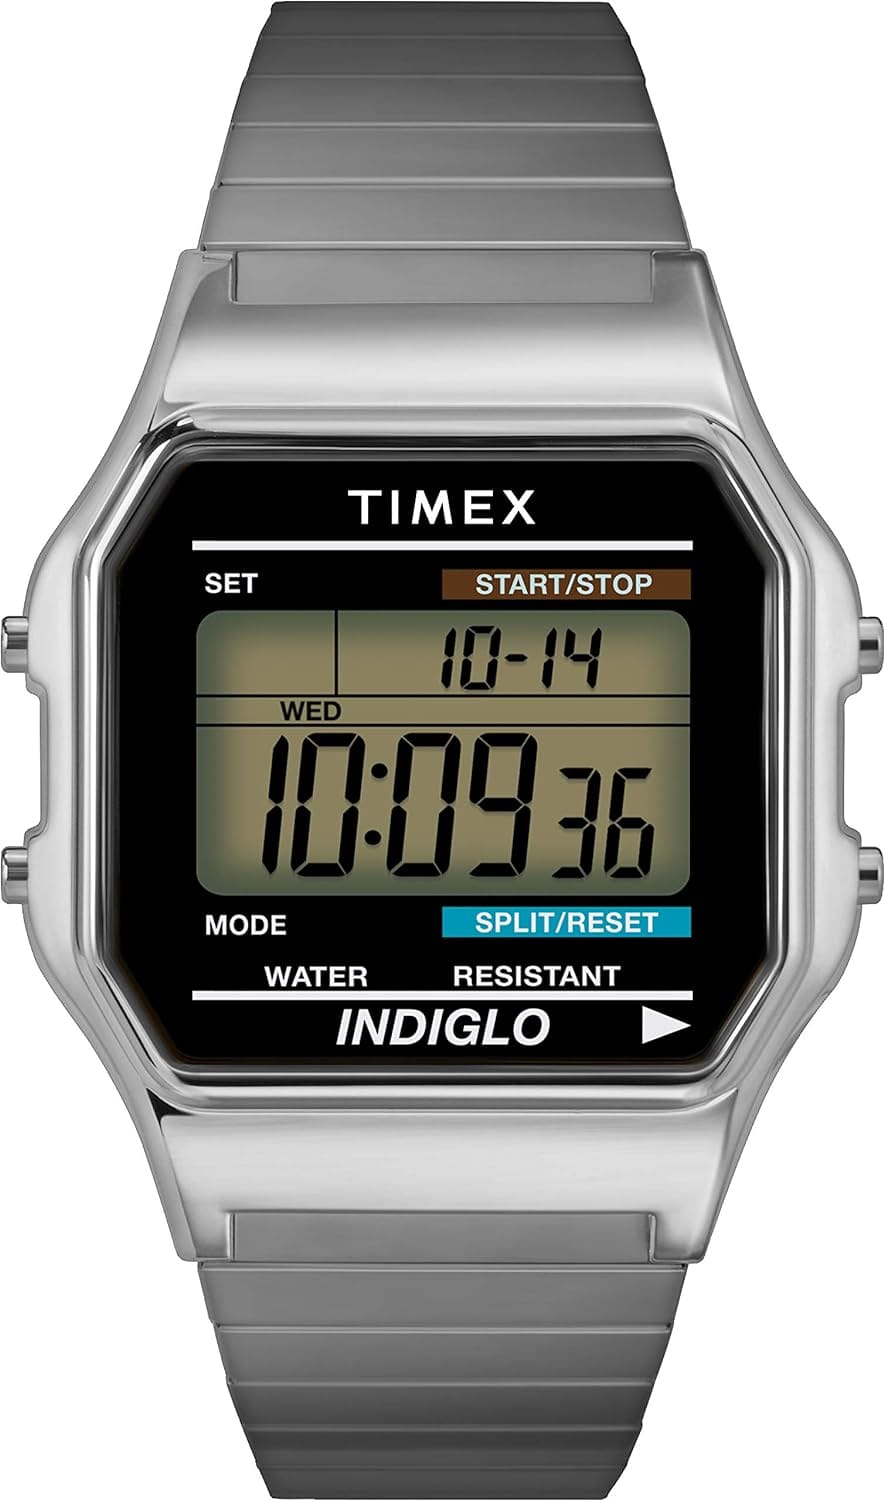 Best Timex  Wrist Watch, part 1